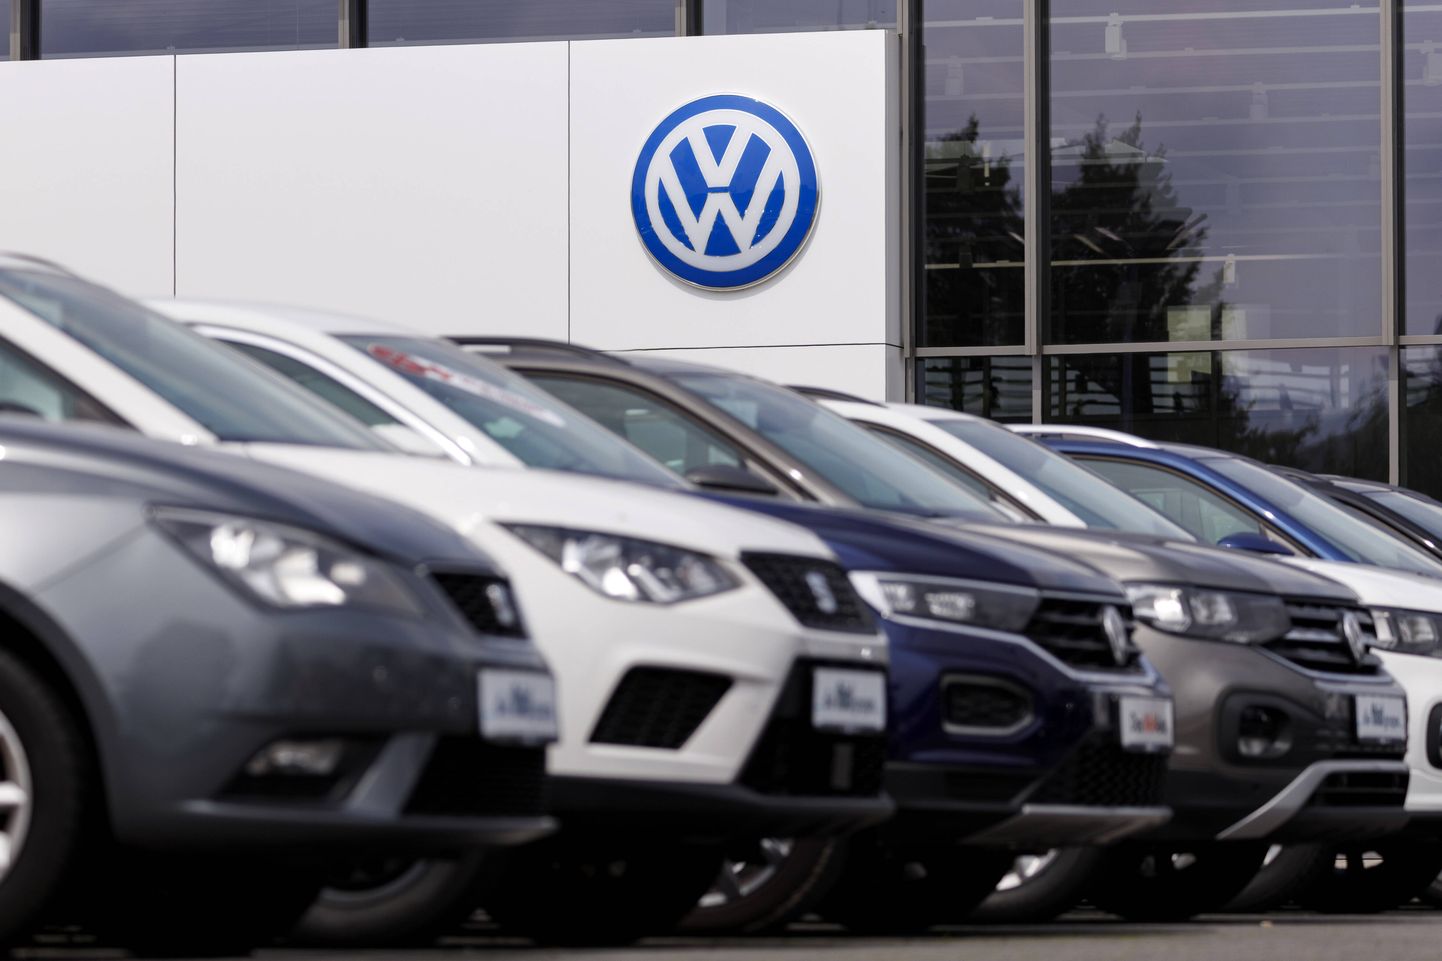 Eestis kõige sagedamini tagasikeritud odomeetriga auto on Volkswagen Phaeton.